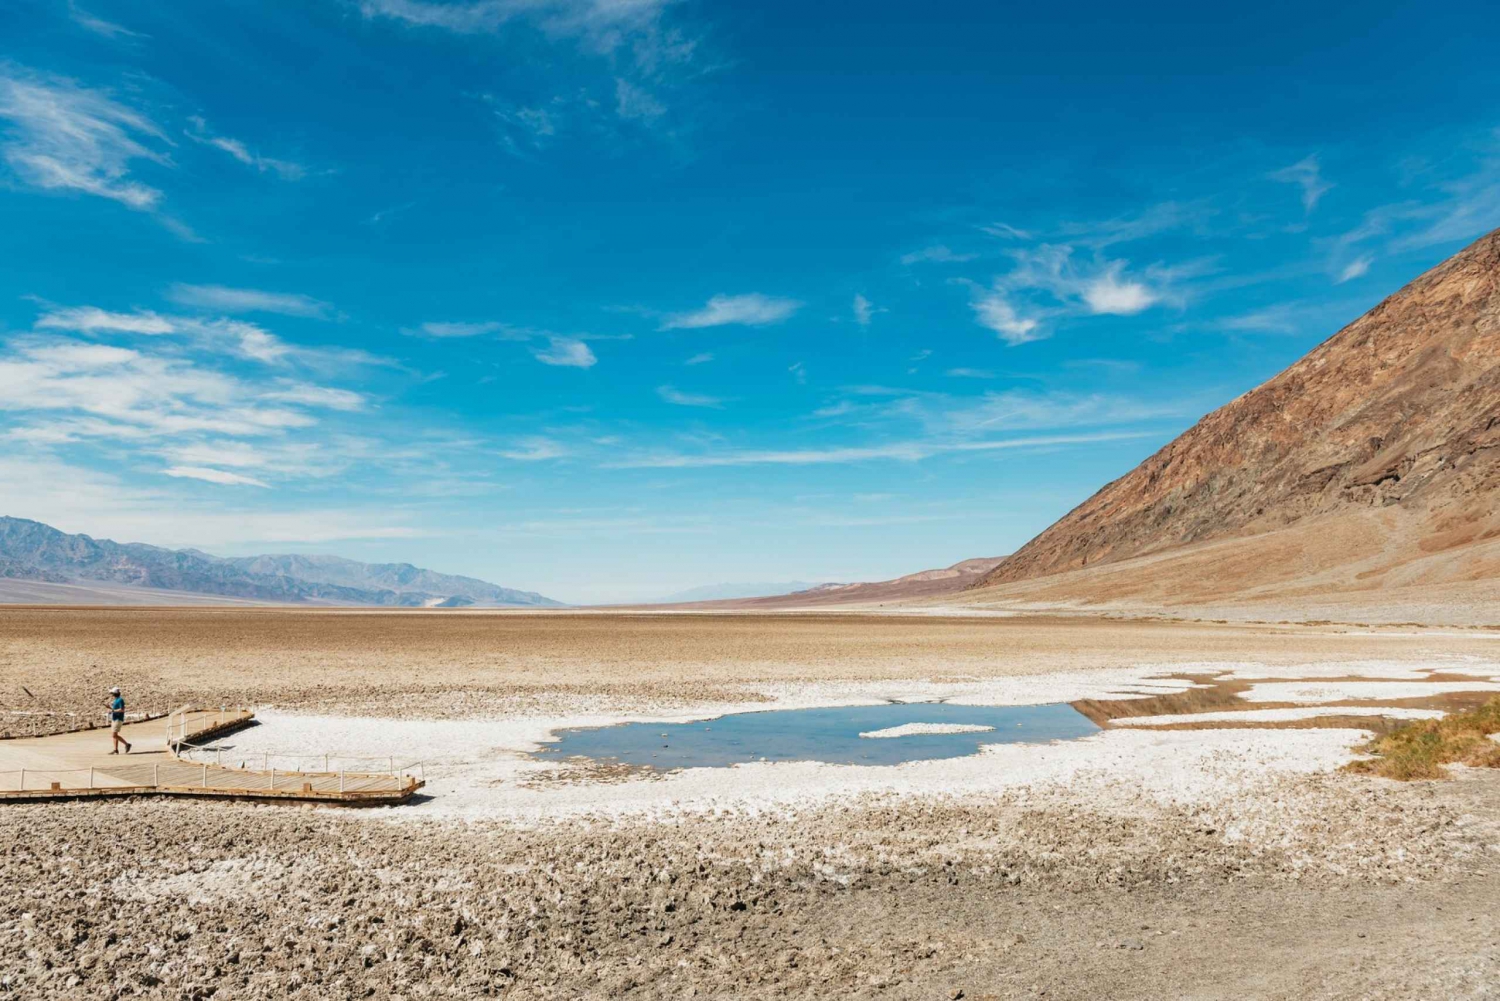 Death Valley NP całodniowa wycieczka w małych grupach z Las Vegas